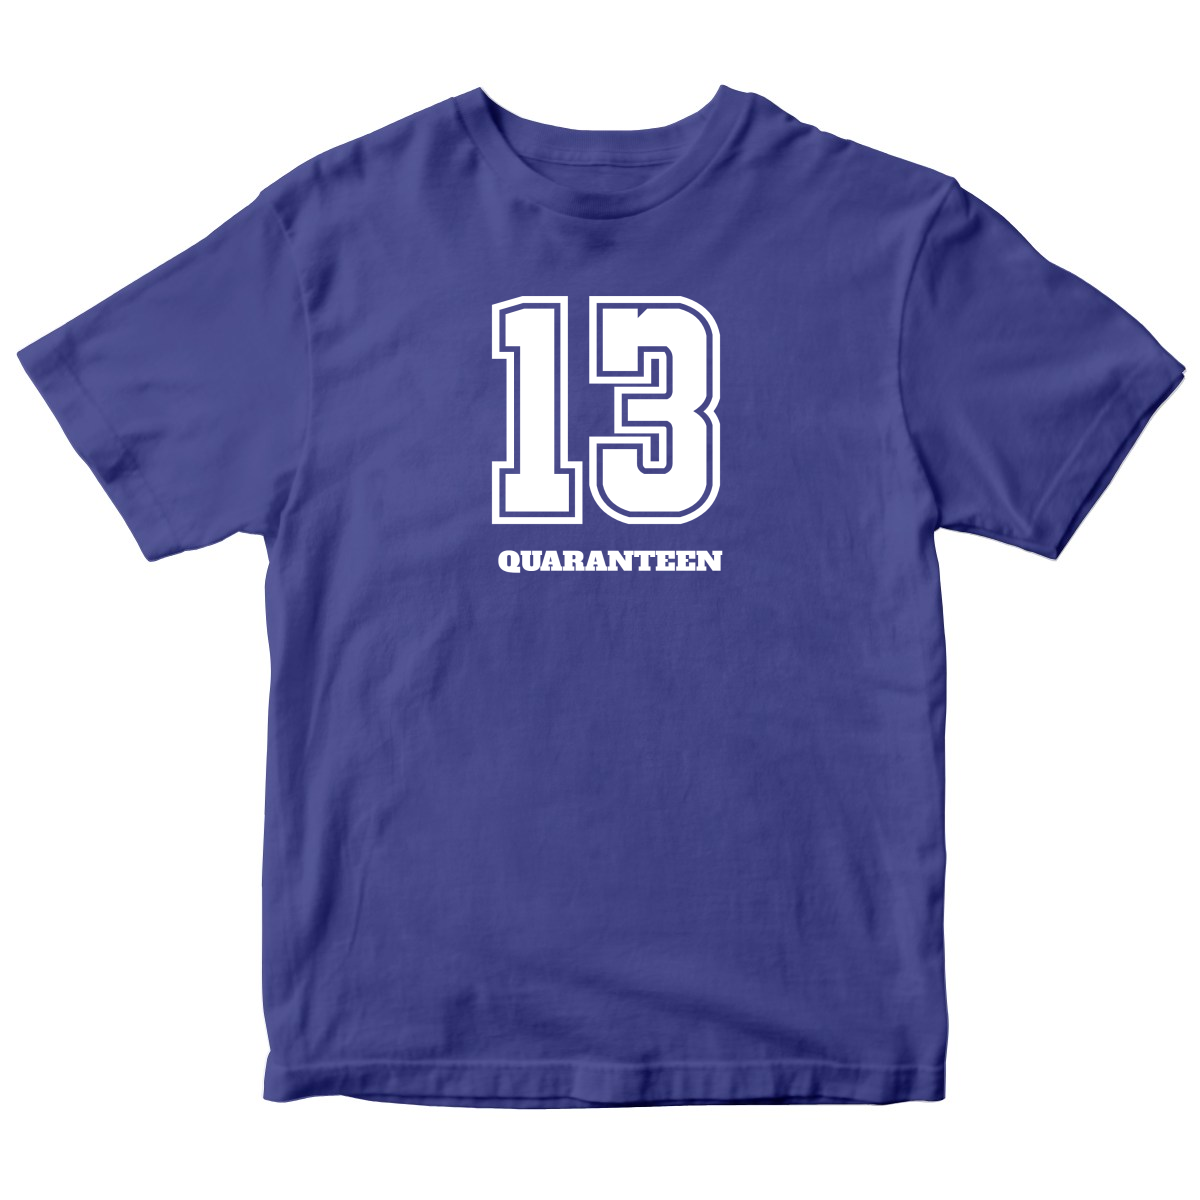 13 QUARANTEEN Kids T-shirt | Blue